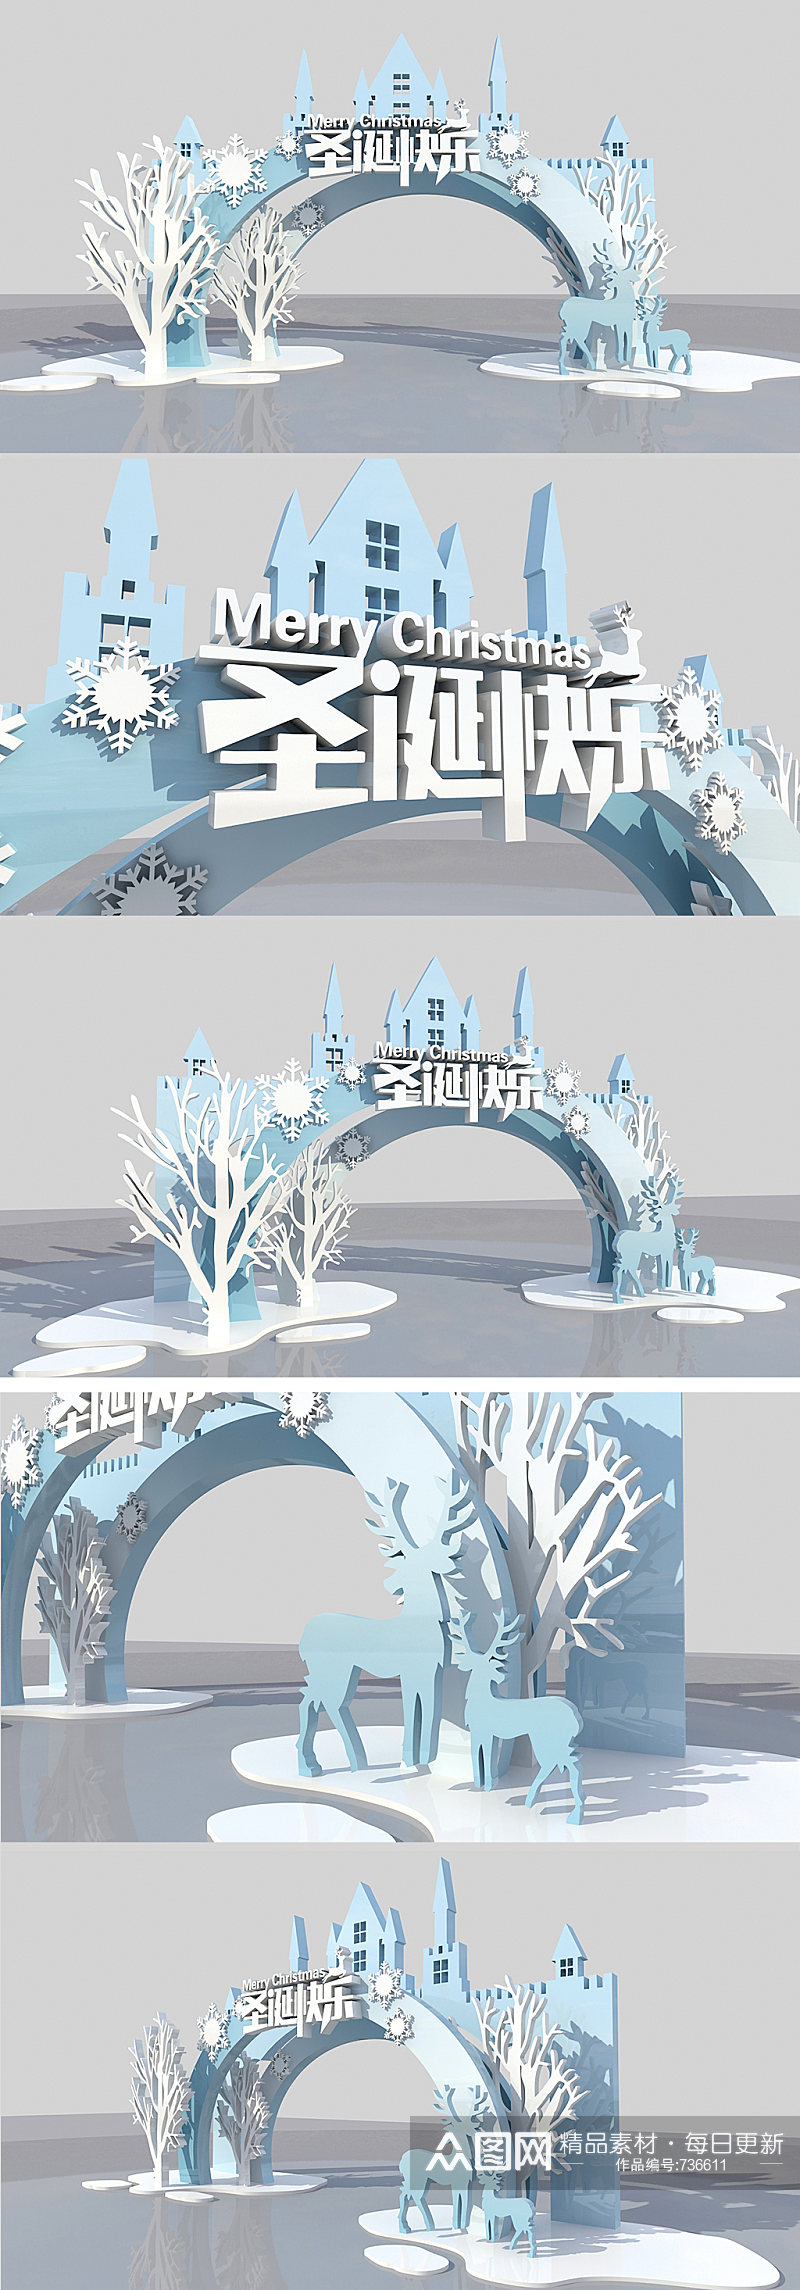 白色城堡圣诞节美陈拱门装饰设计素材